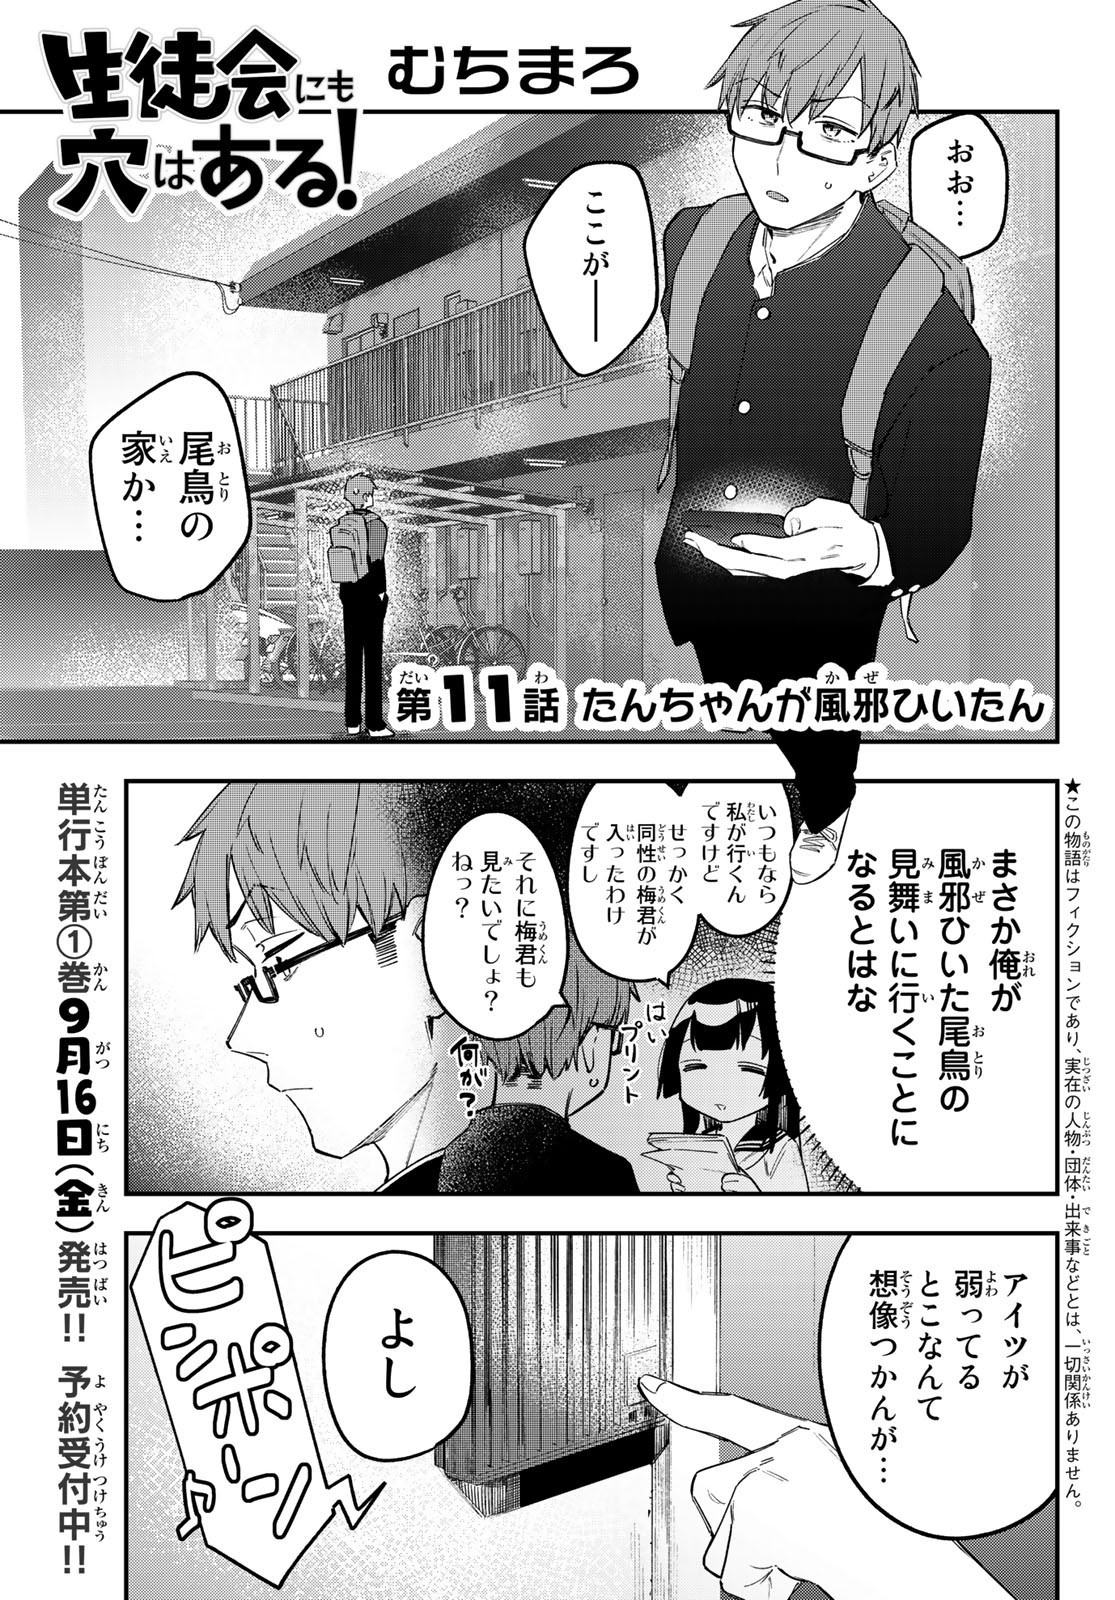 Seitokai ni mo Ana wa Aru! - Chapter 011 - Page 1